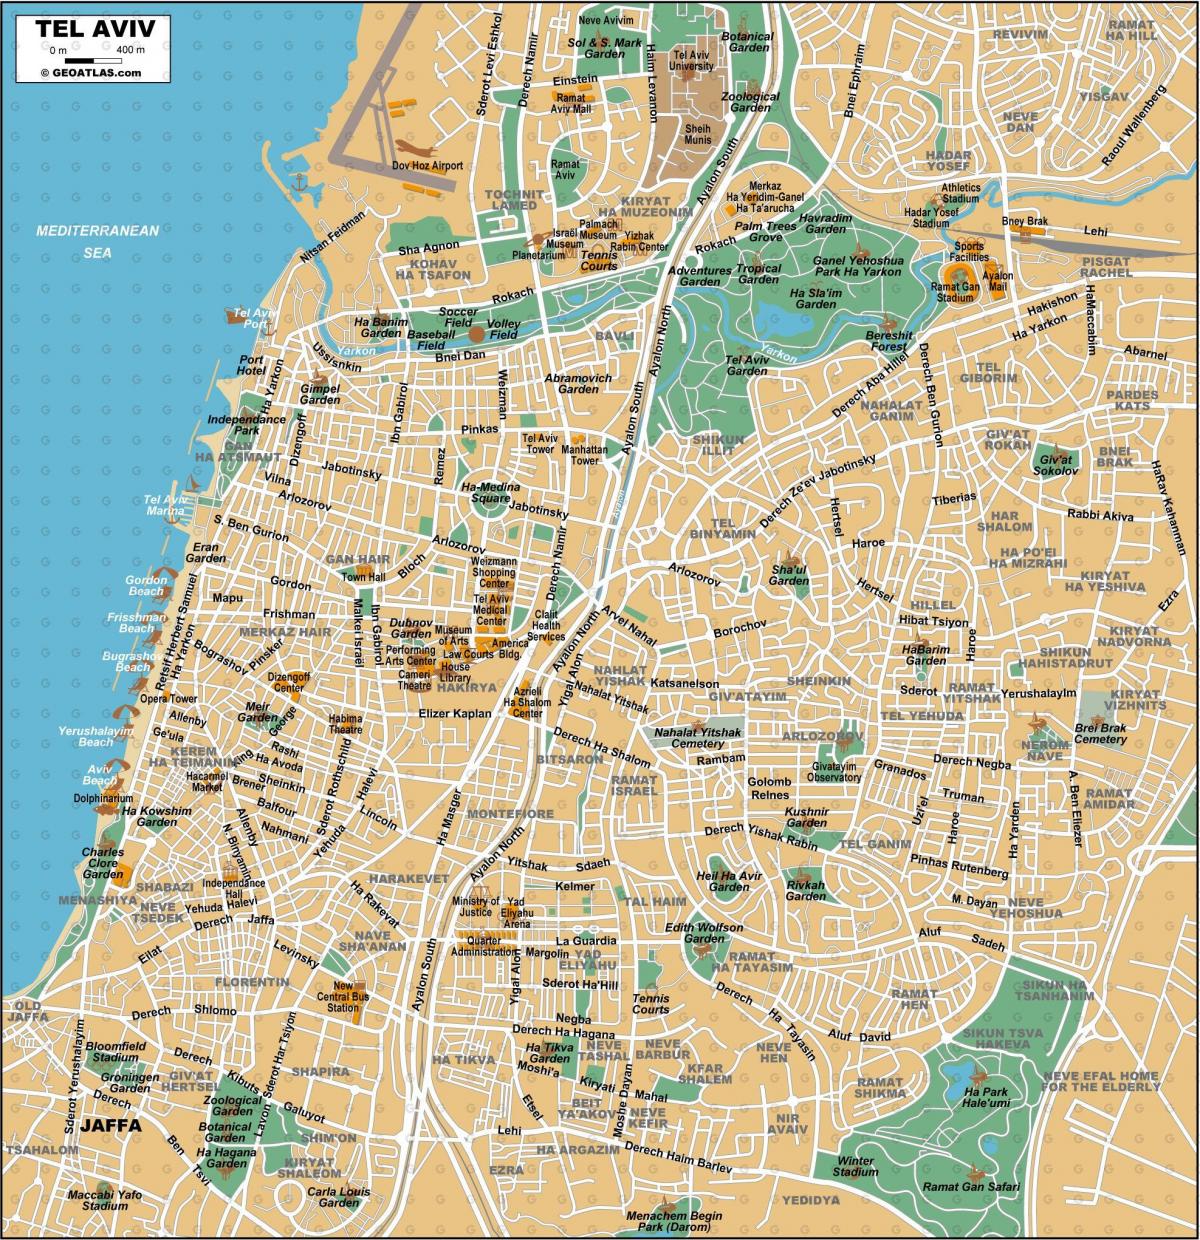 Mapa do centro da cidade de Tel Aviv